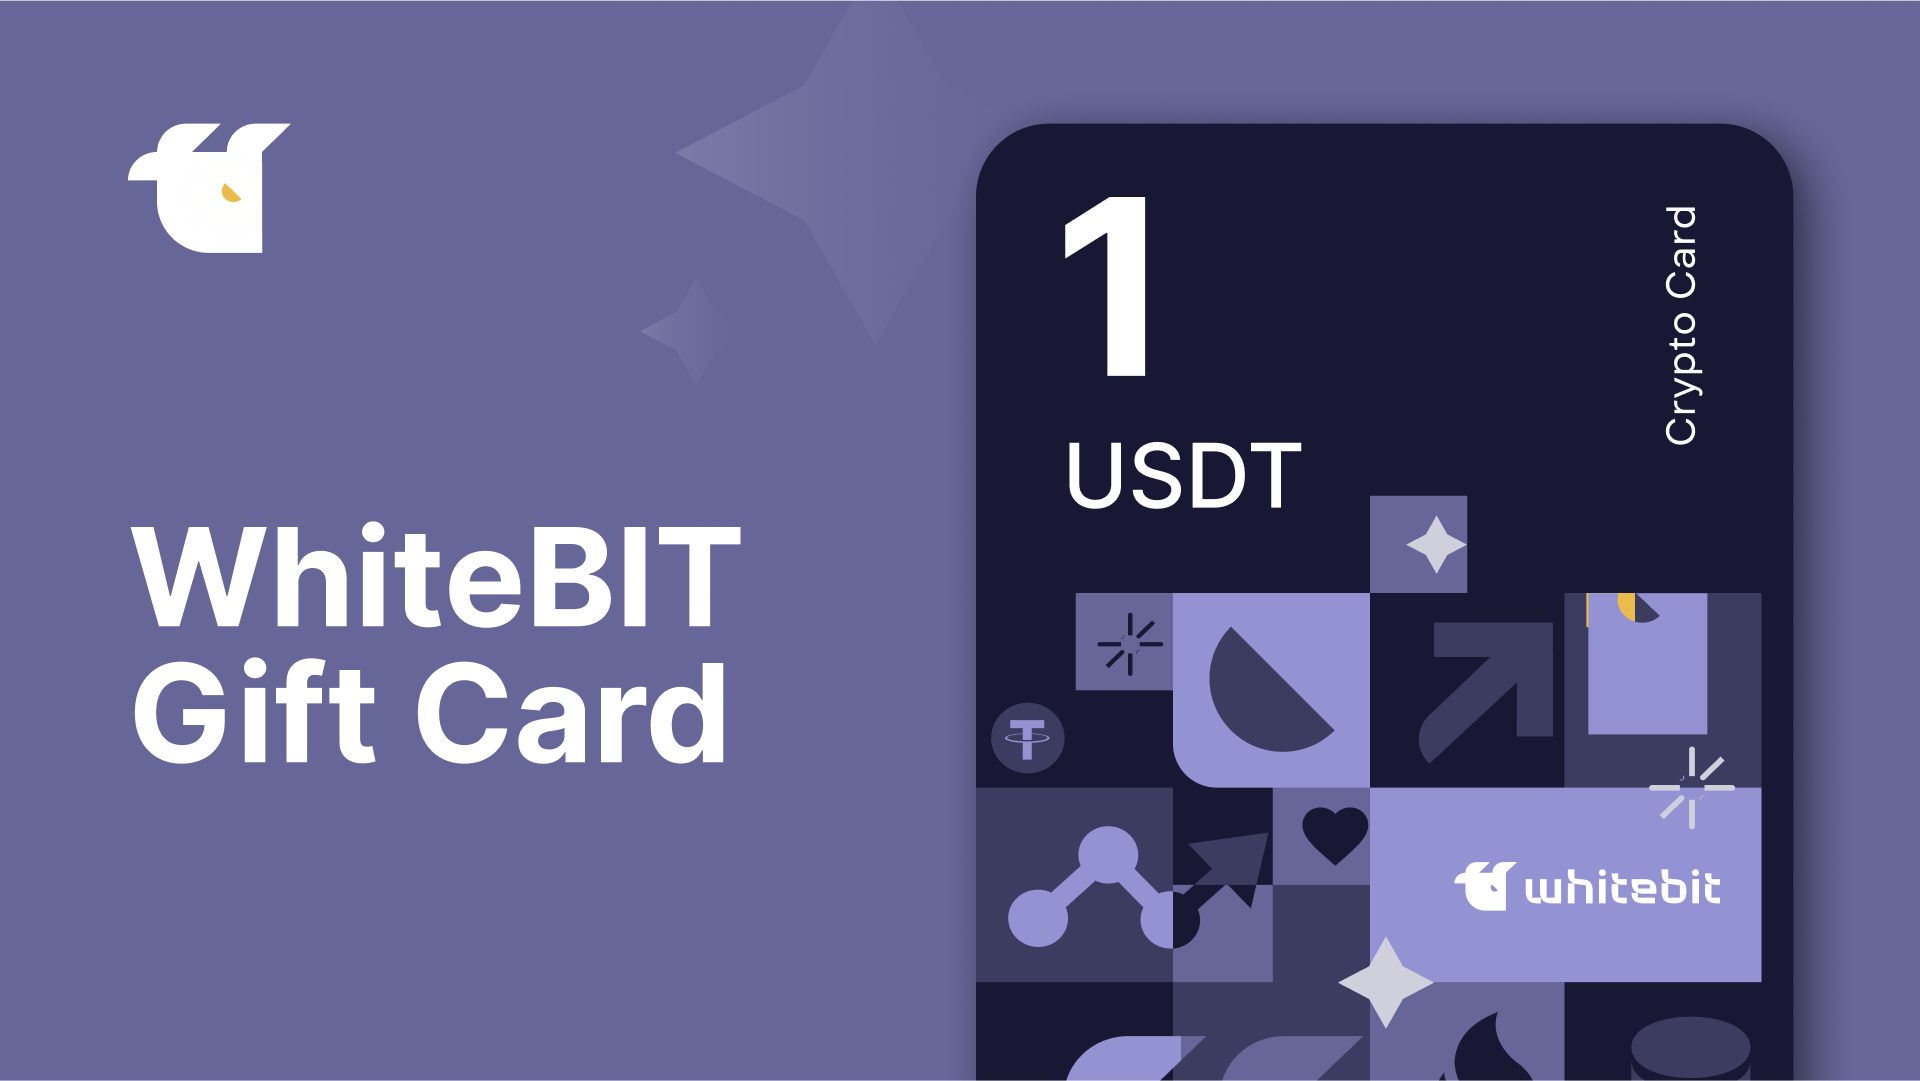 WhiteBIT 1 USDT Gift Card, 1.33$